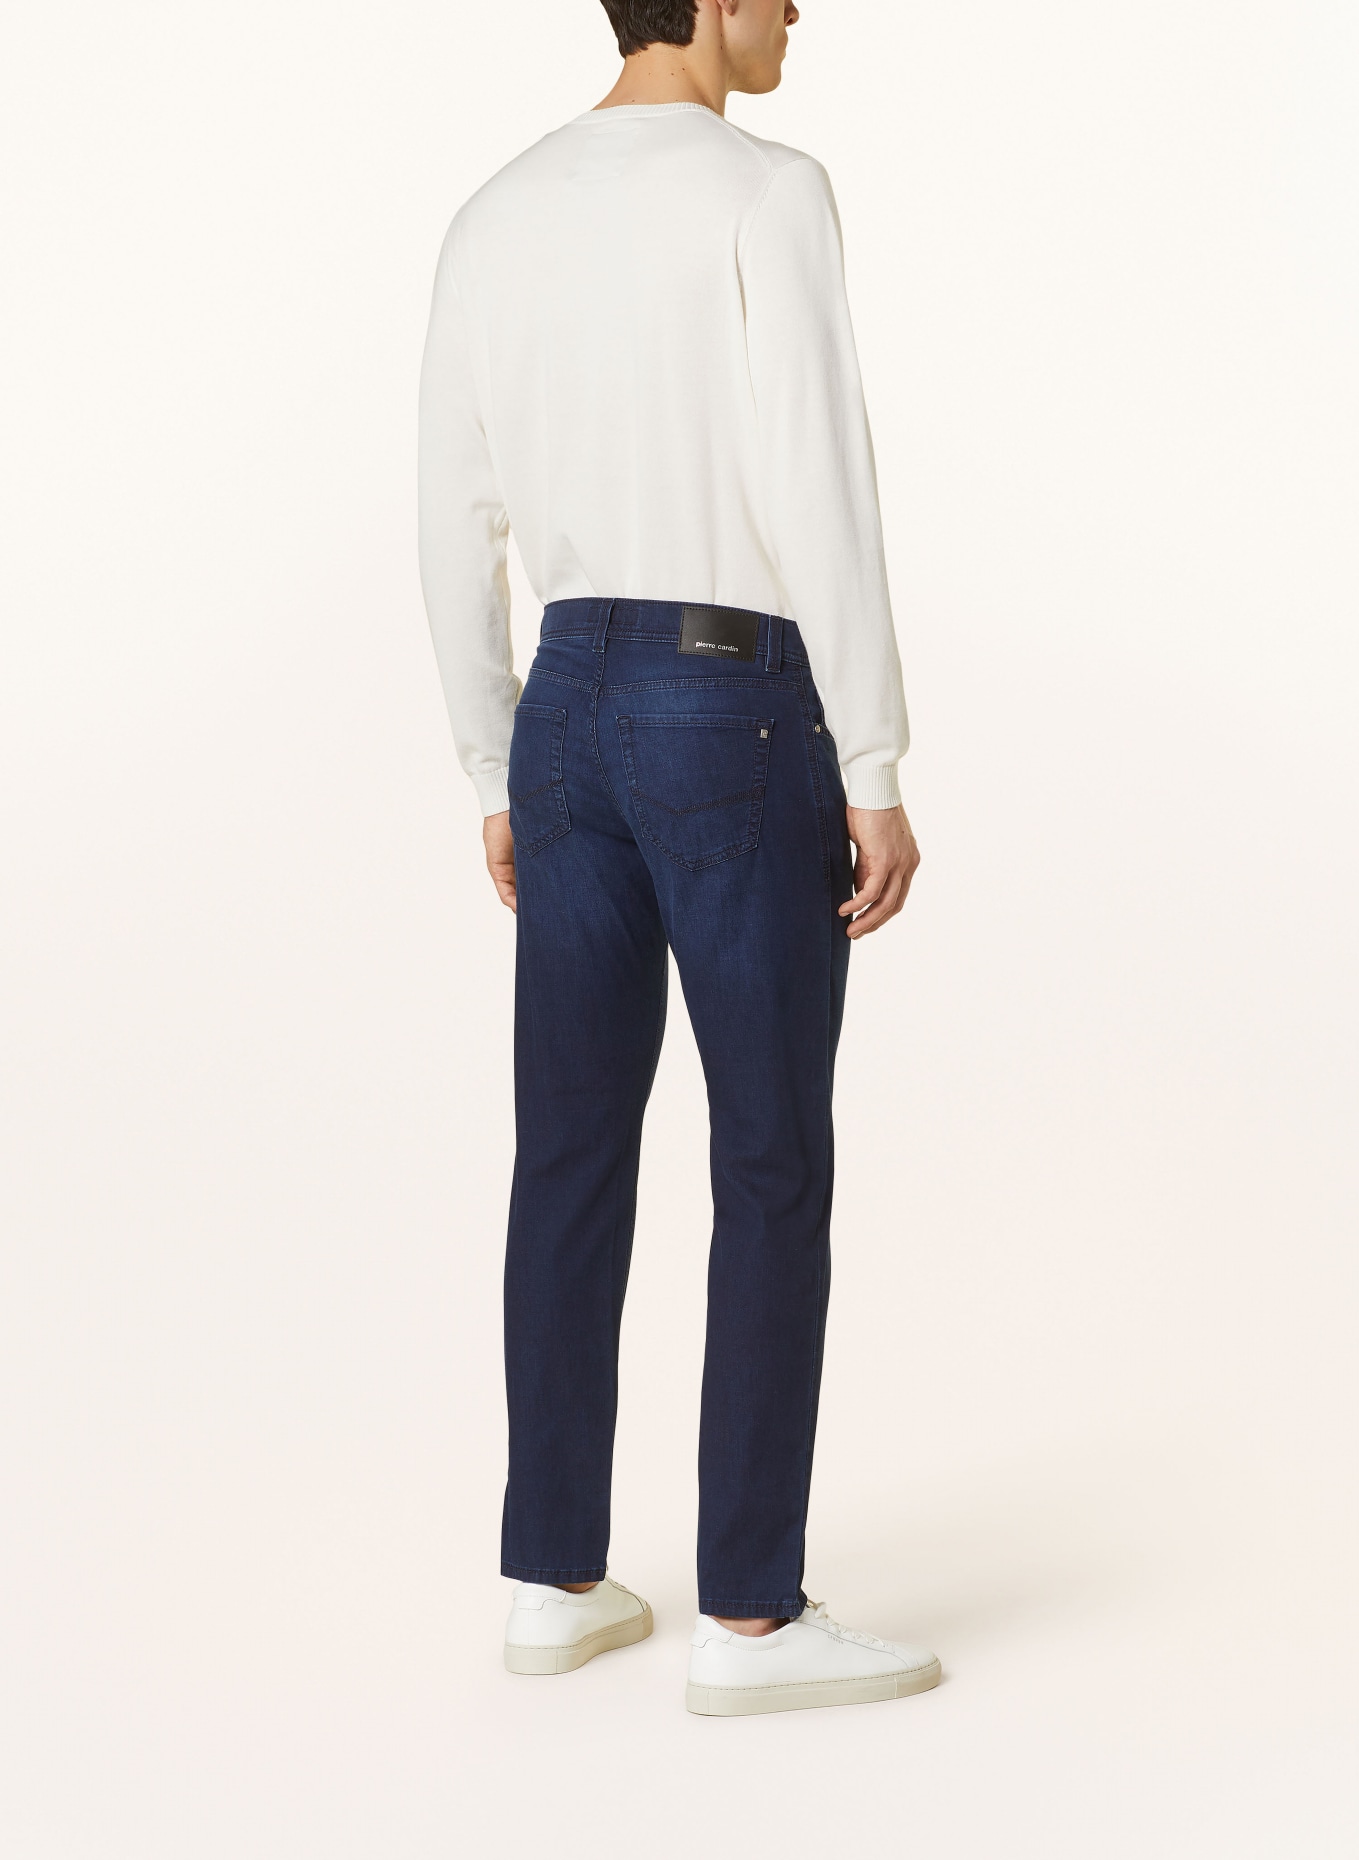 pierre cardin Jeans LYON Slim Fit, Farbe: 6814 dark blue used buffies (Bild 3)